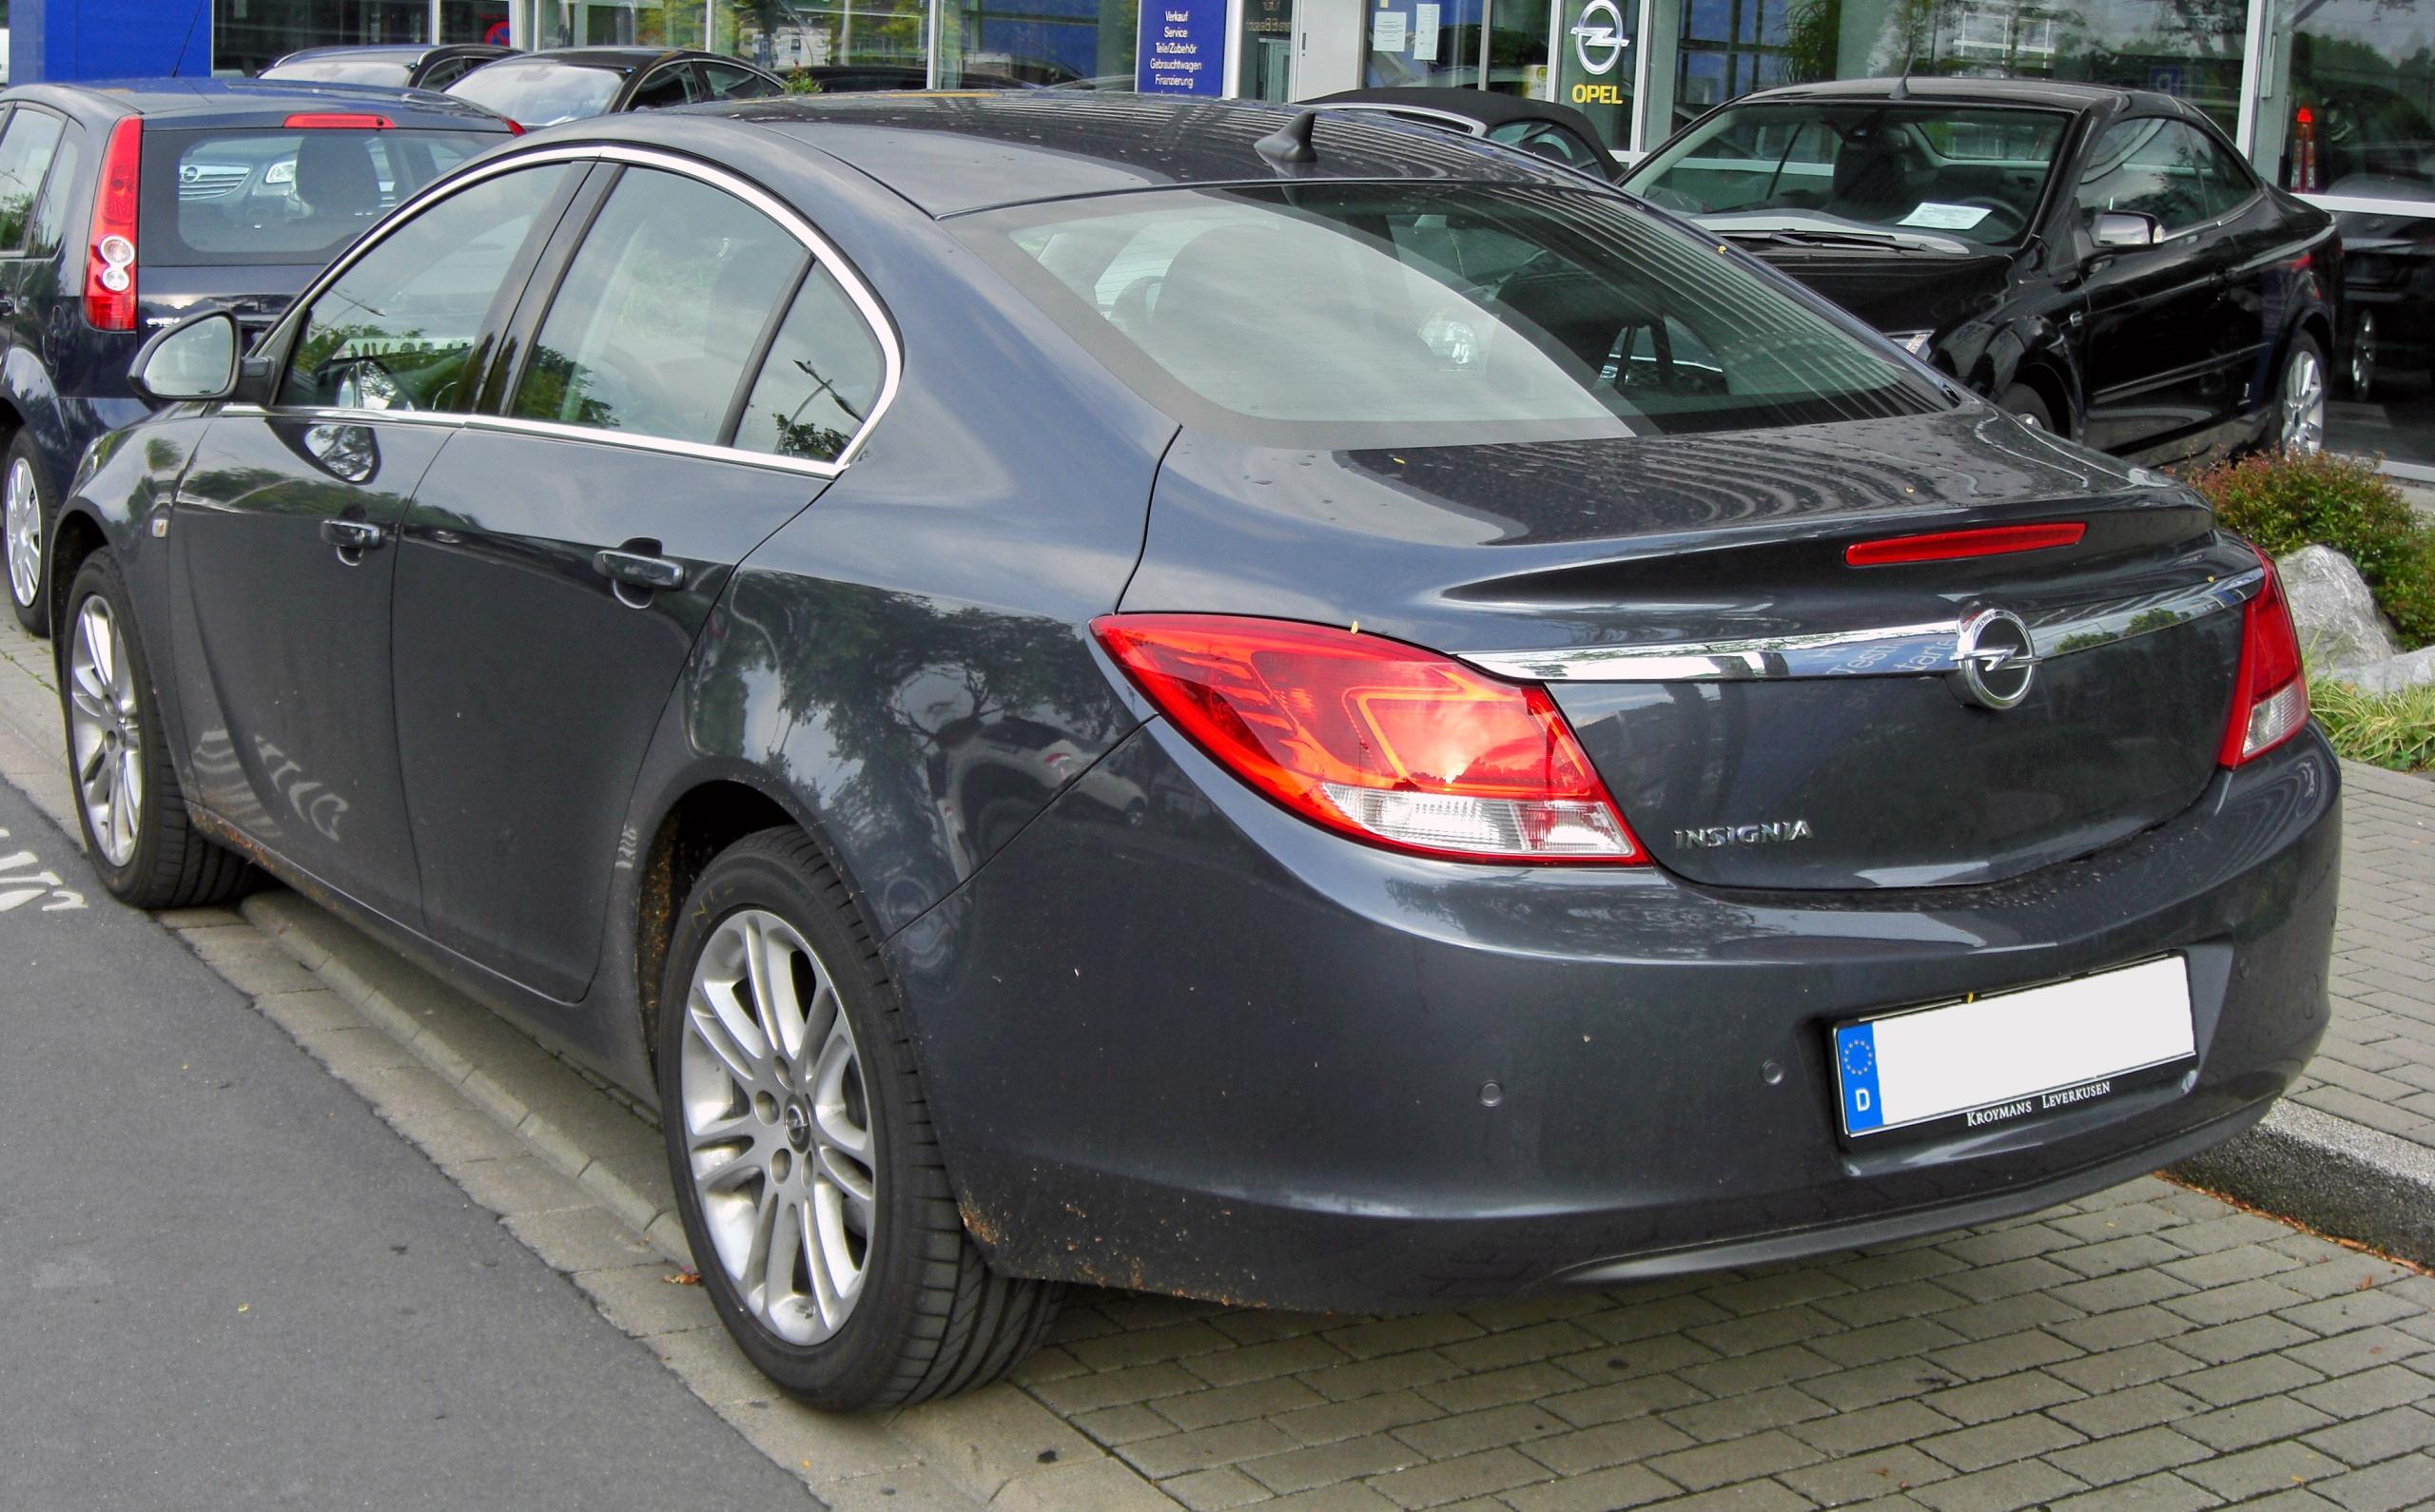 File:Opel Insignia 20090706 rear.JPG - Wikimedia Commons